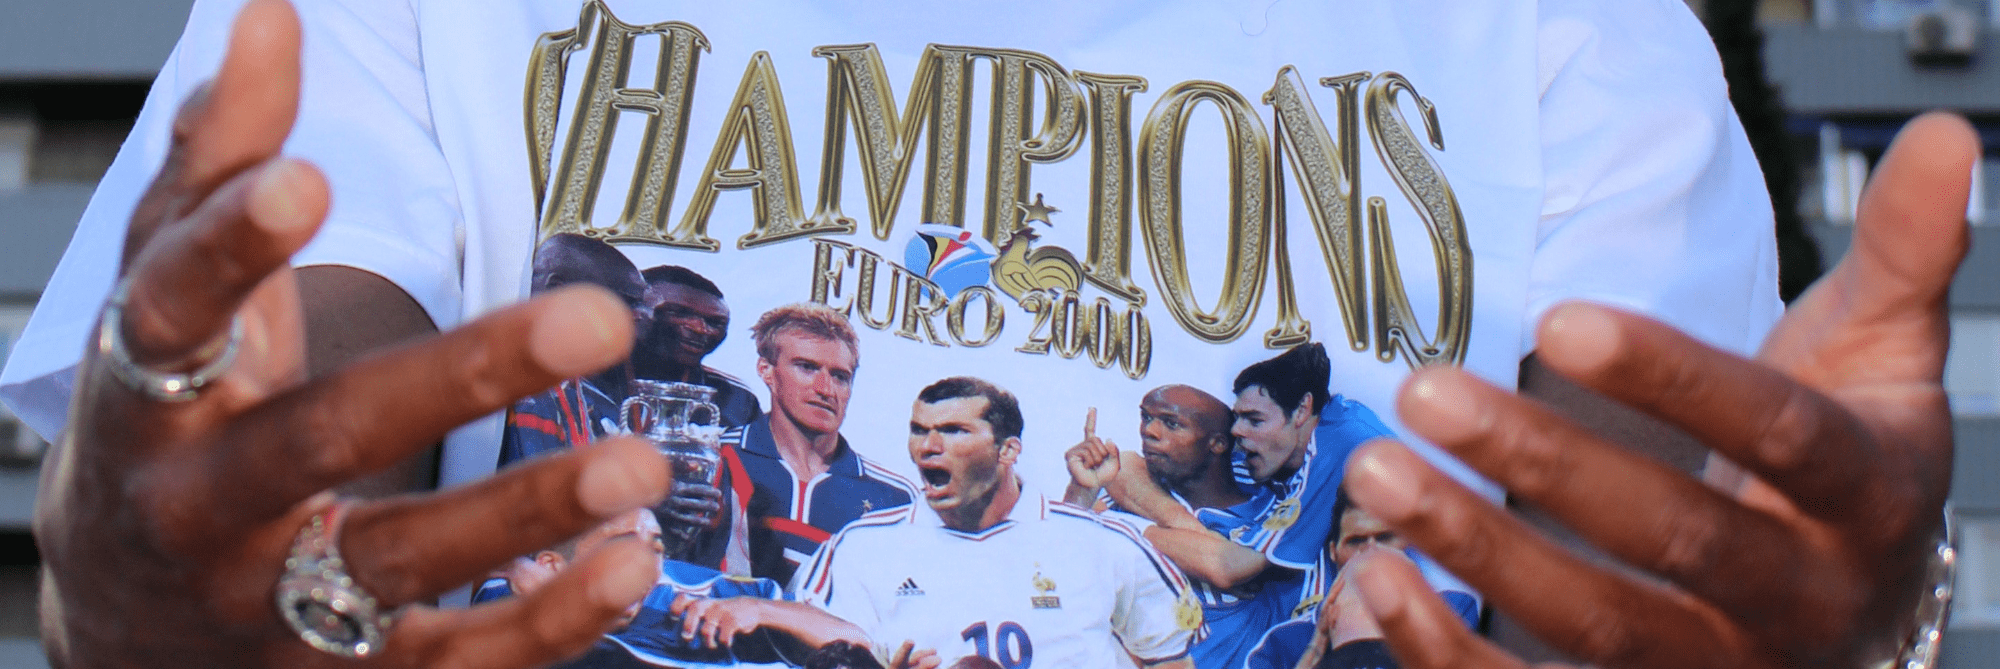 La marque RFG célèbre l’EURO 2000 !